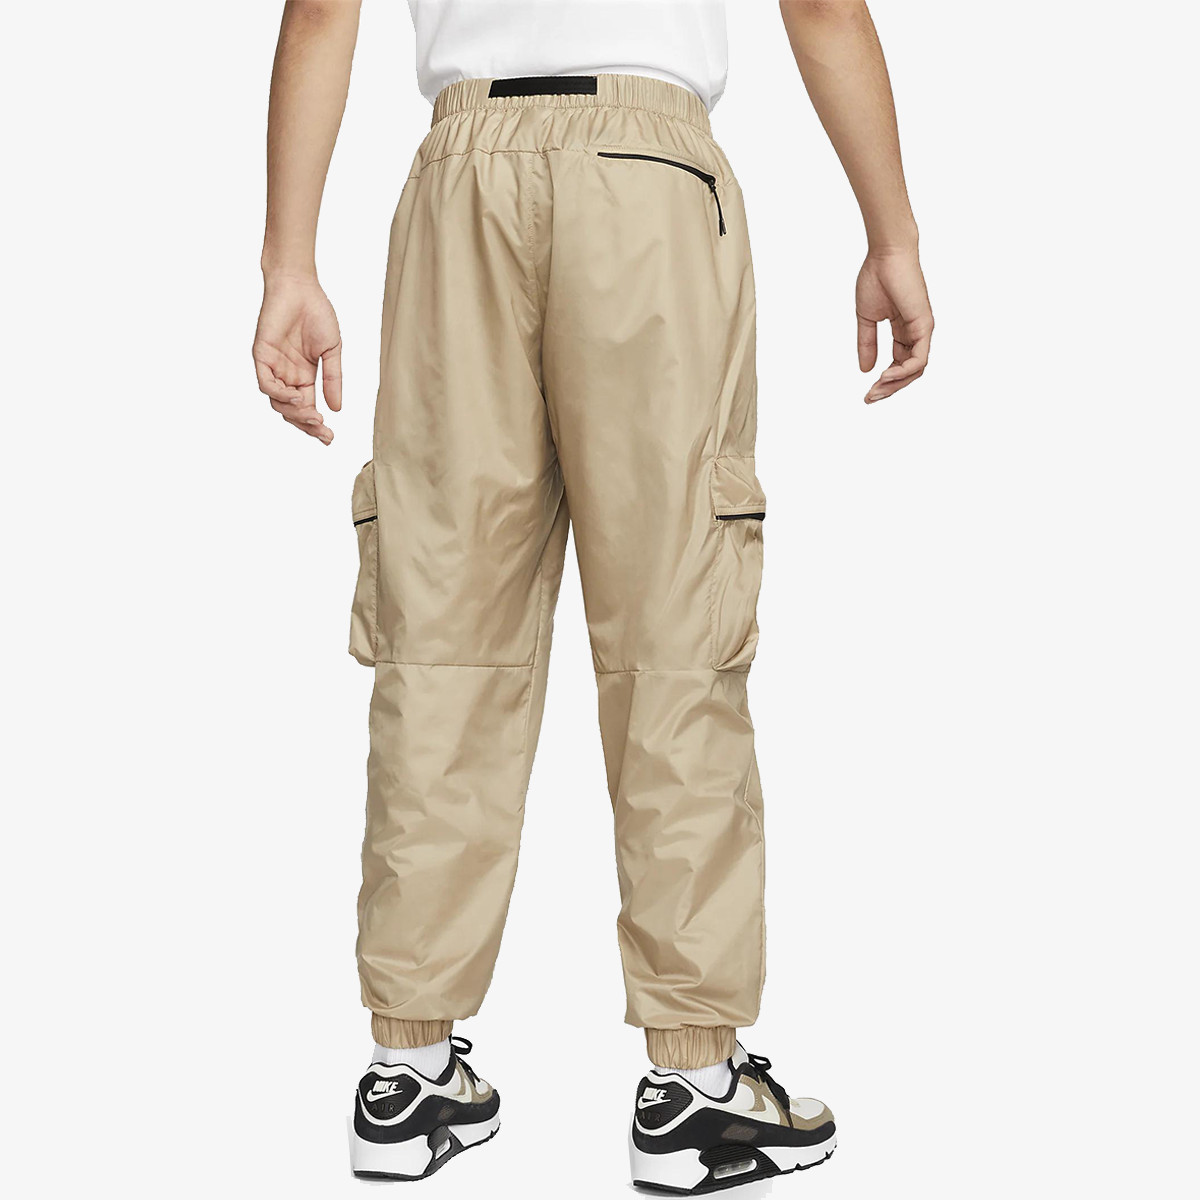 Nike Pantalone Tech Lined 